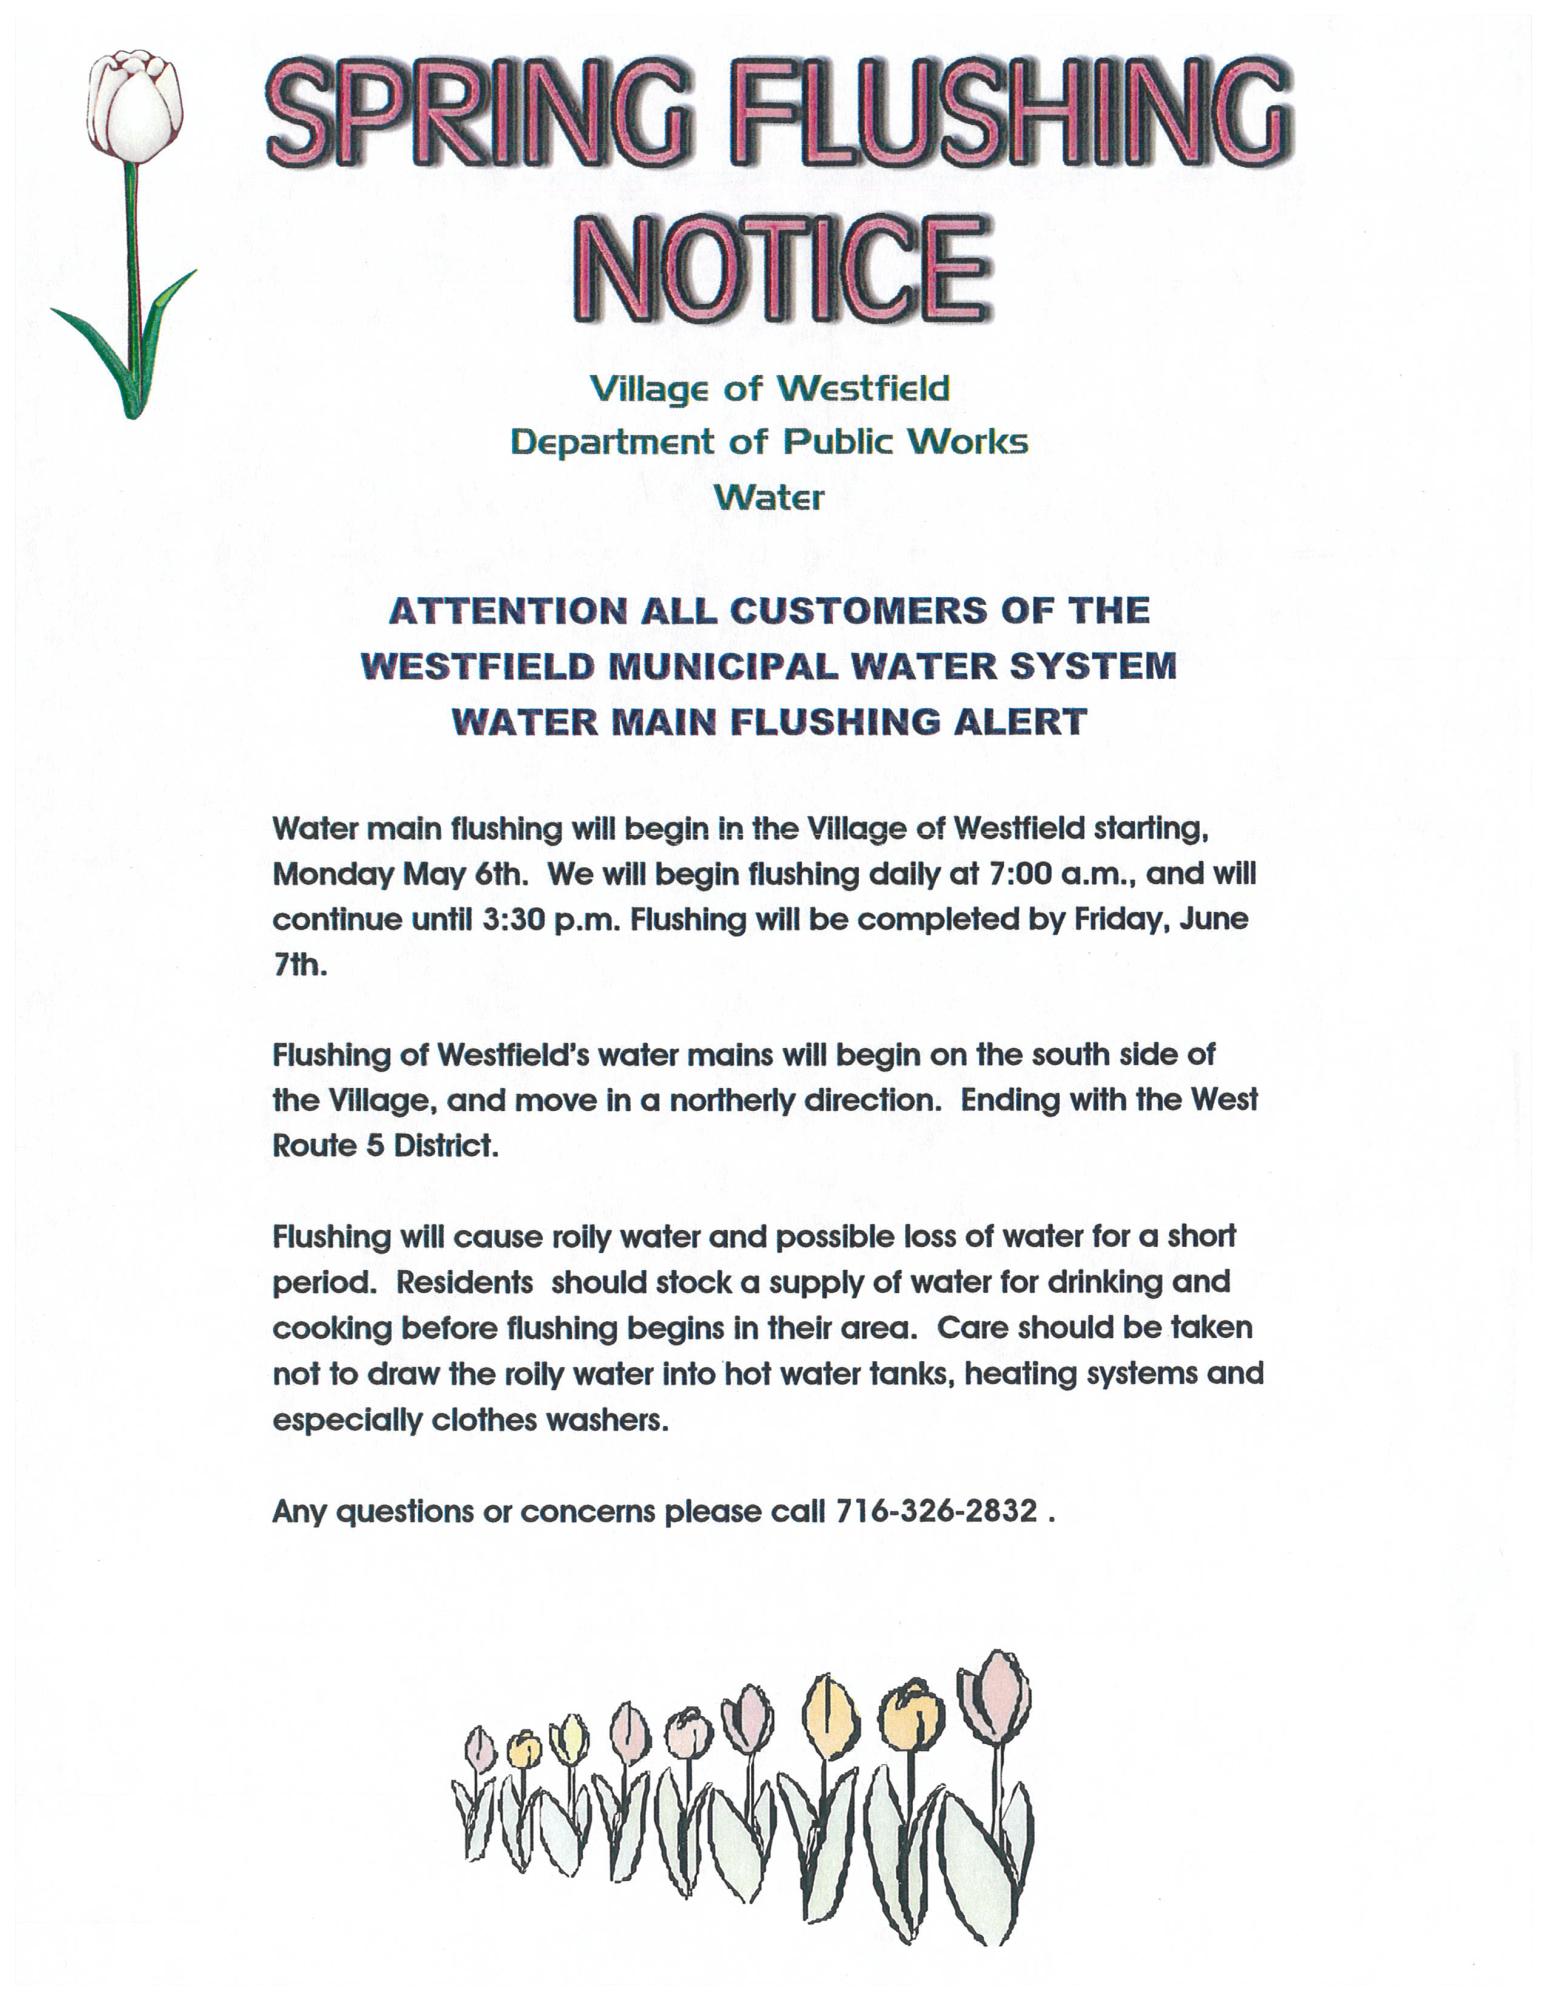 Spring flushing poster - May 6 starting 7 am